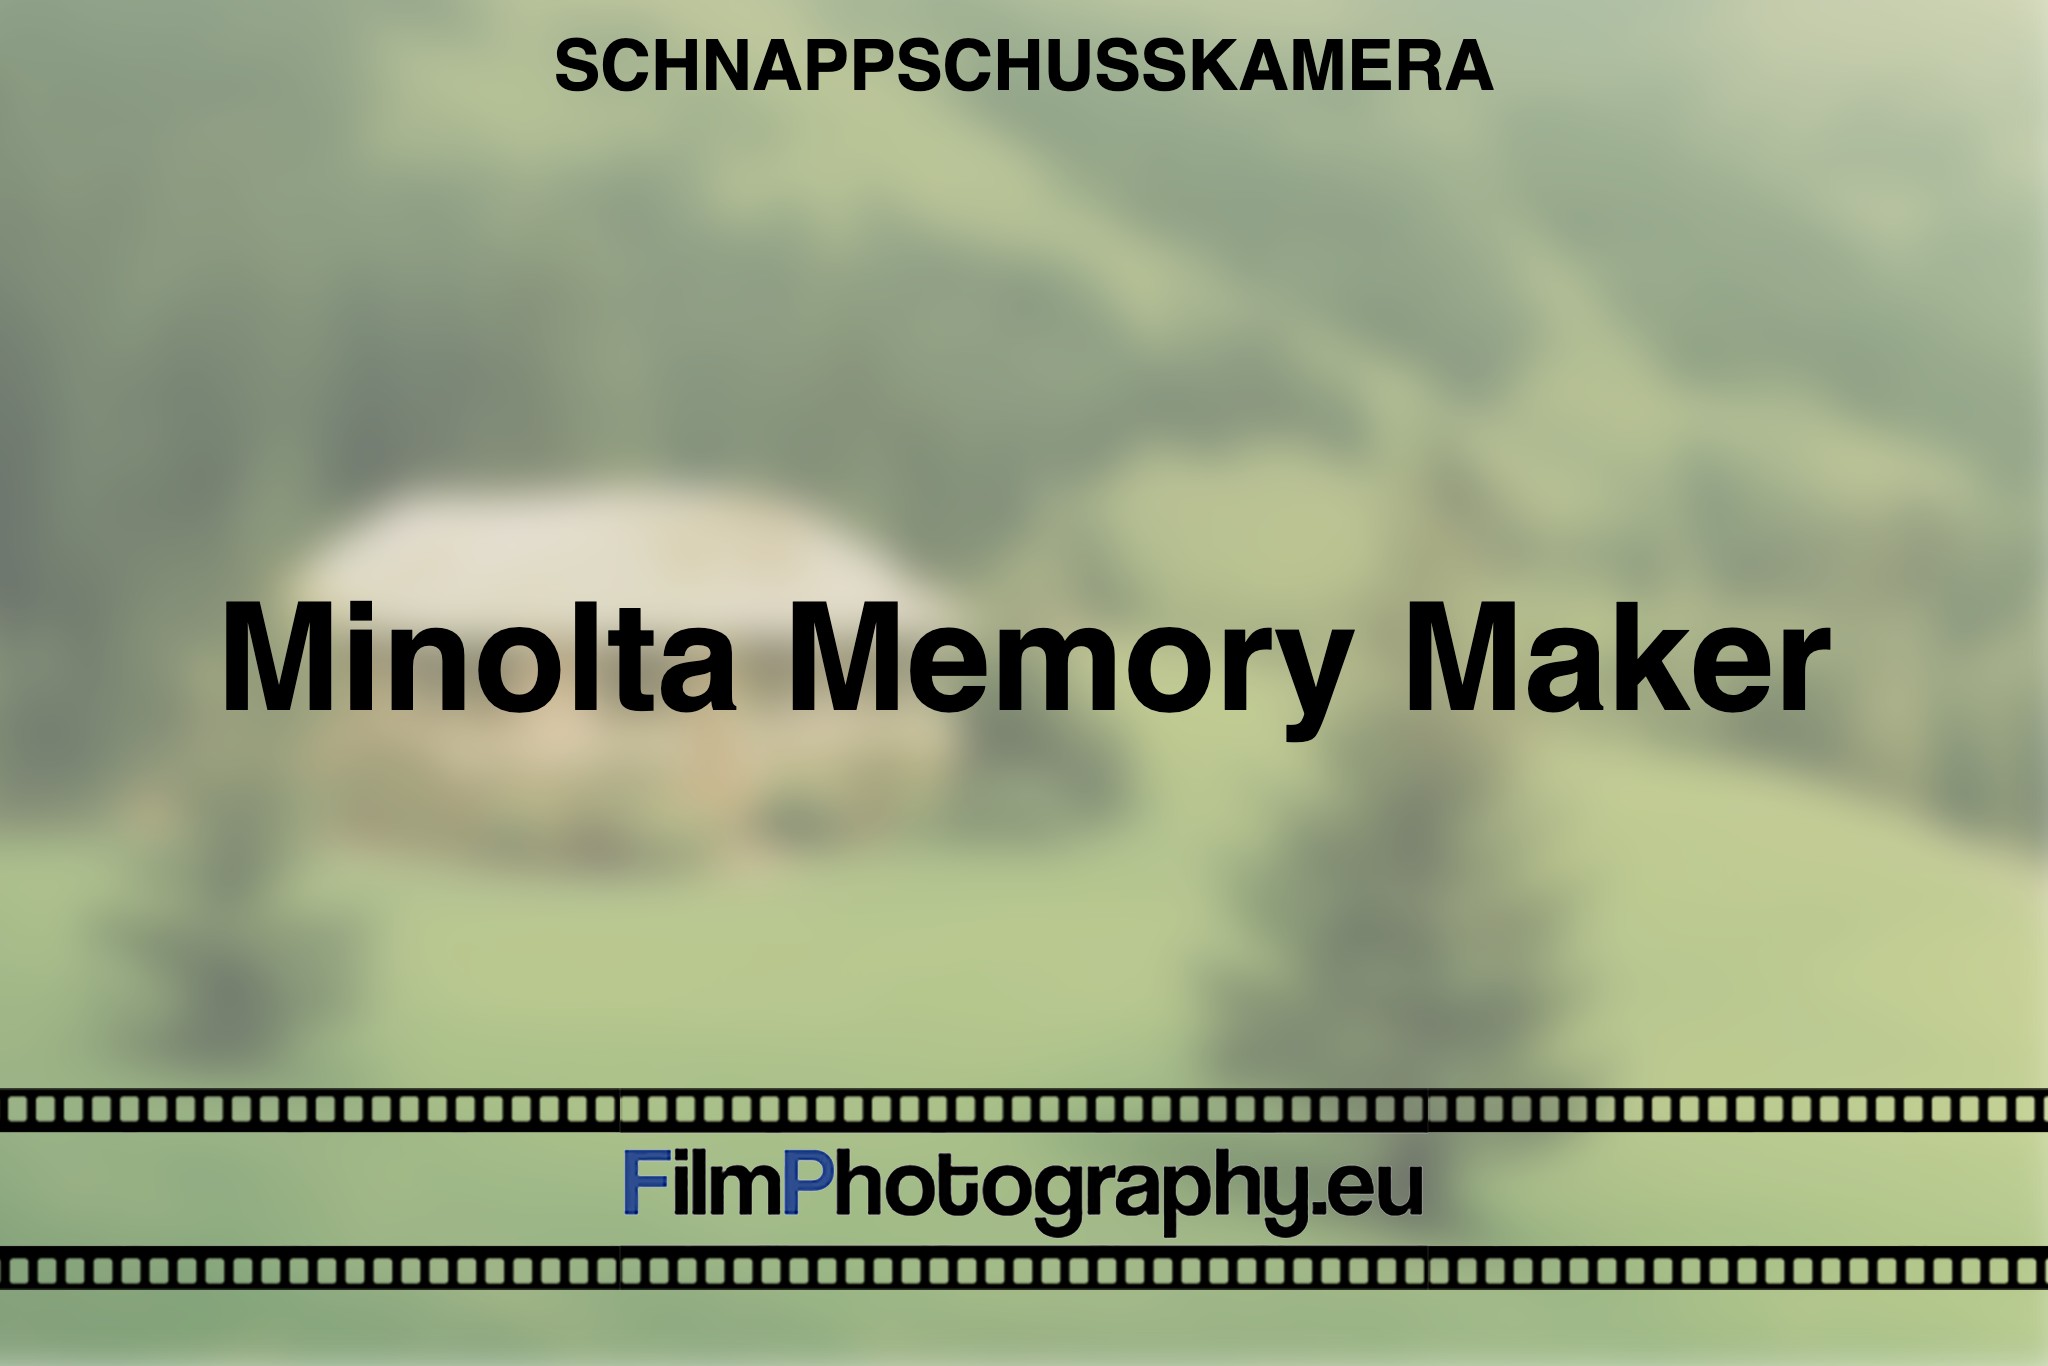 minolta-memory-maker-schnappschusskamera-bnv